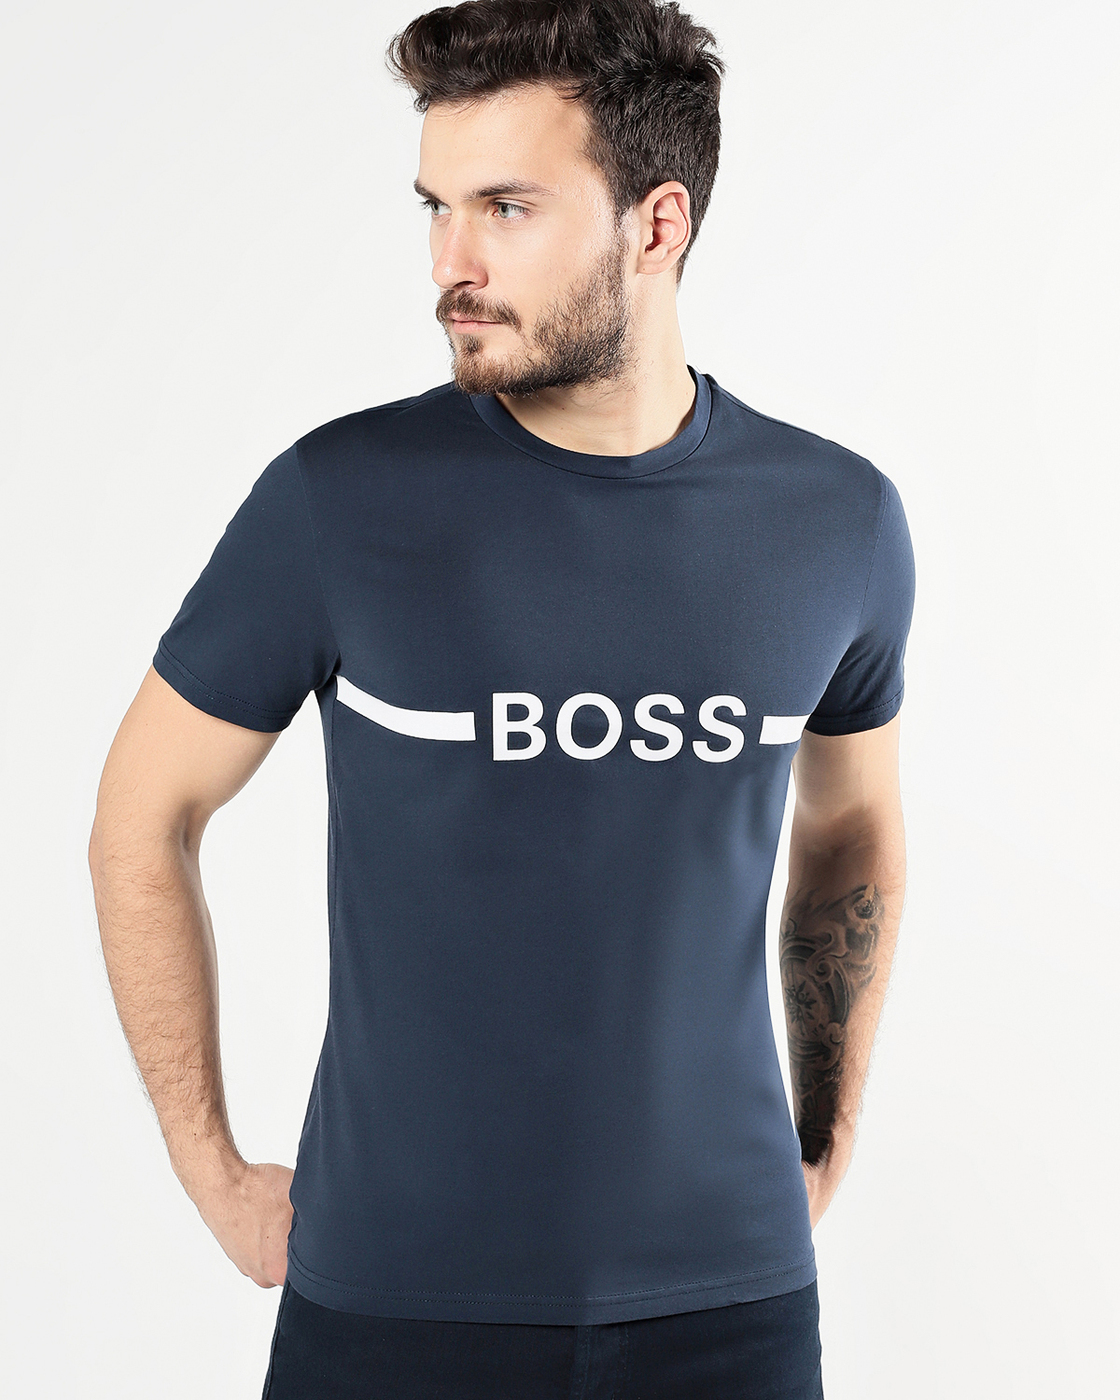 Футболки хуго босс. Майка Boss Hugo Boss. Футболка Boss Hugo Boss. Футболка Хьюго босс мужская. Футболка Hugo Boss 50488330.